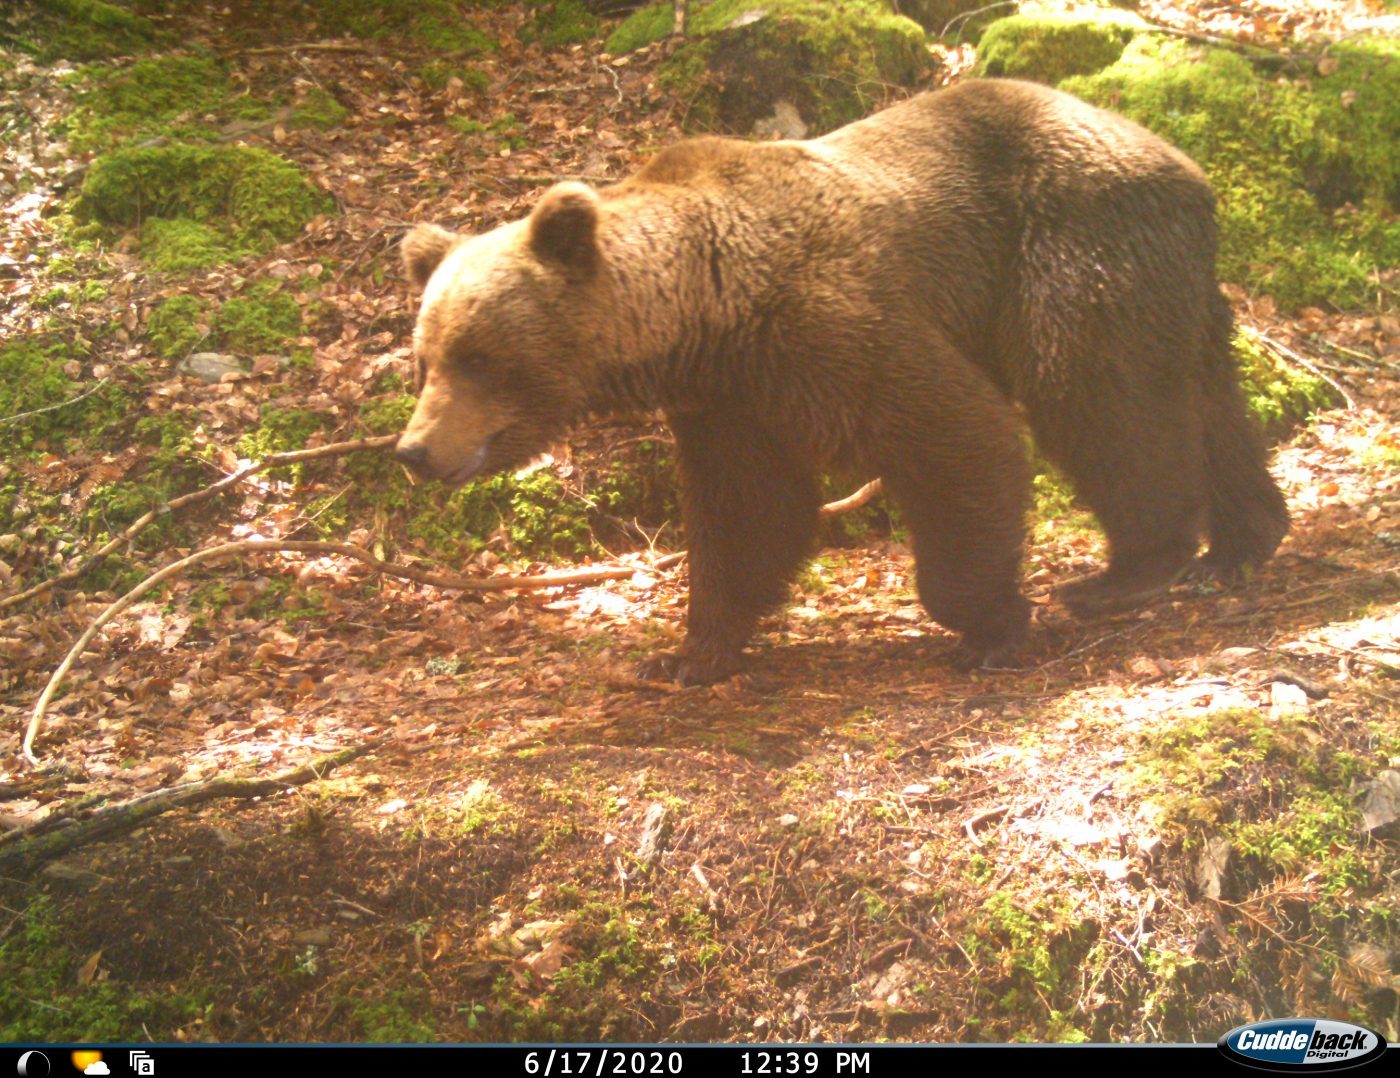 L'ours brun des Pyrénées - Couserans Pyrénées